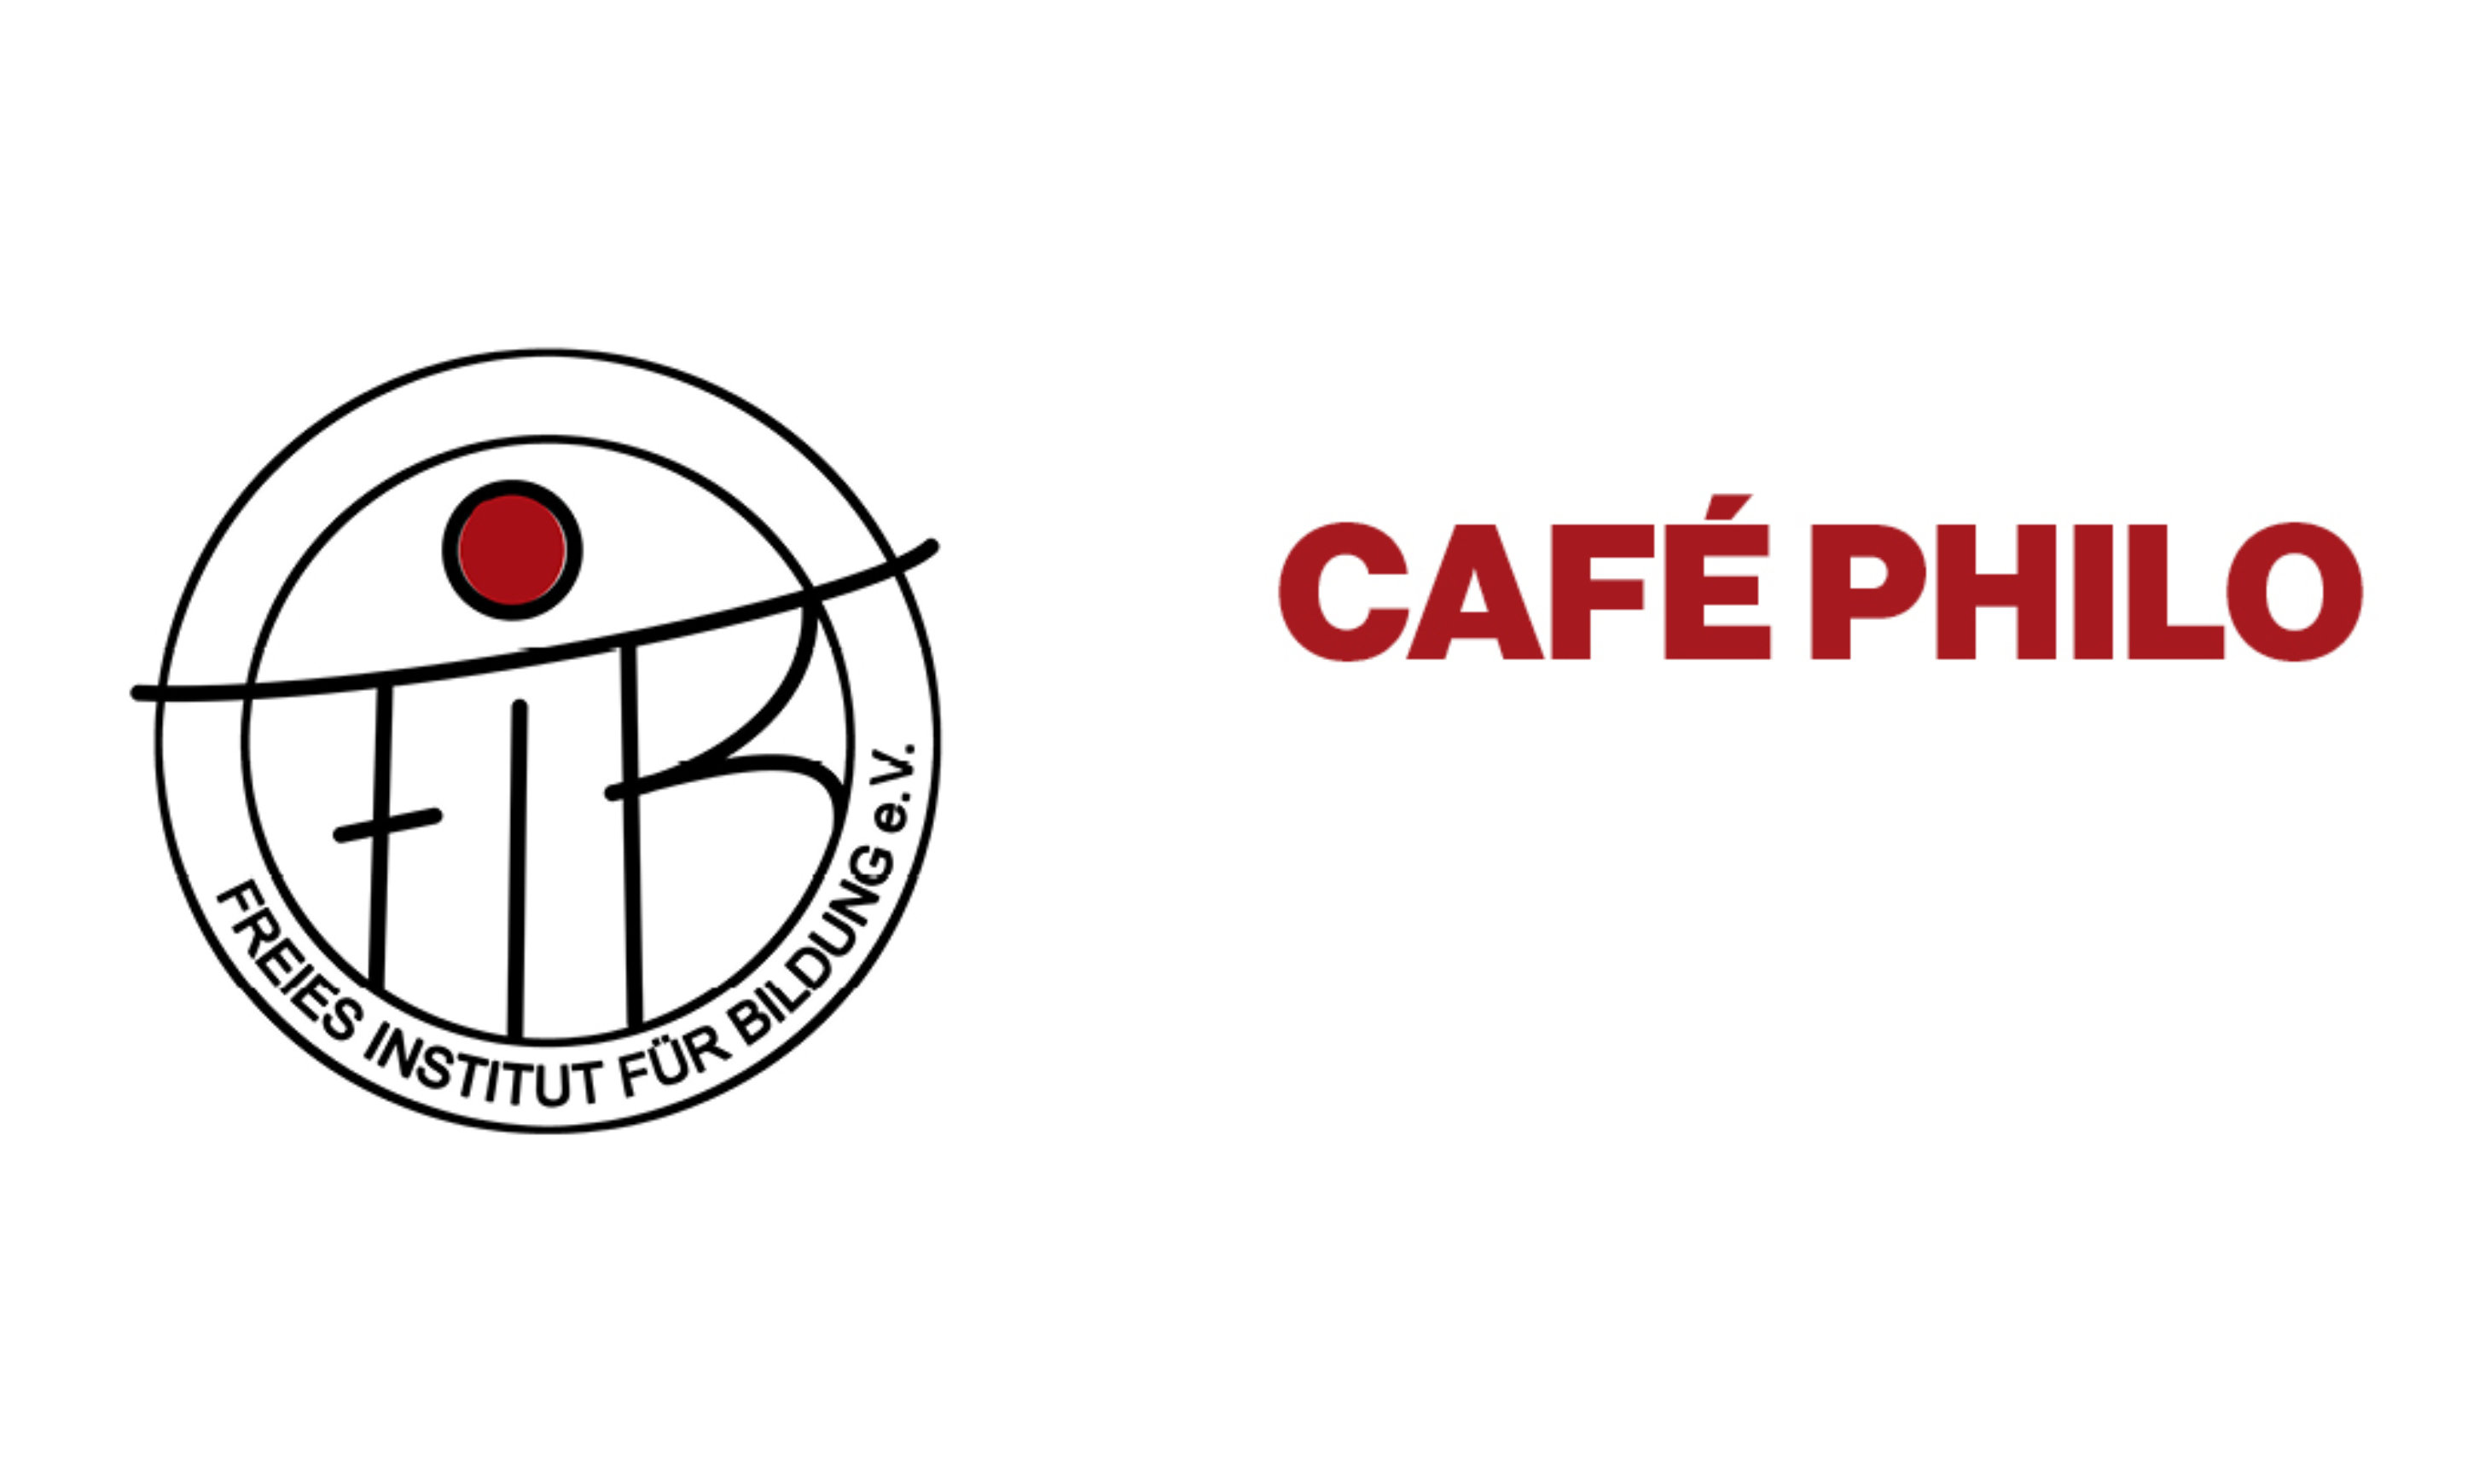 Cafe Philo - 01